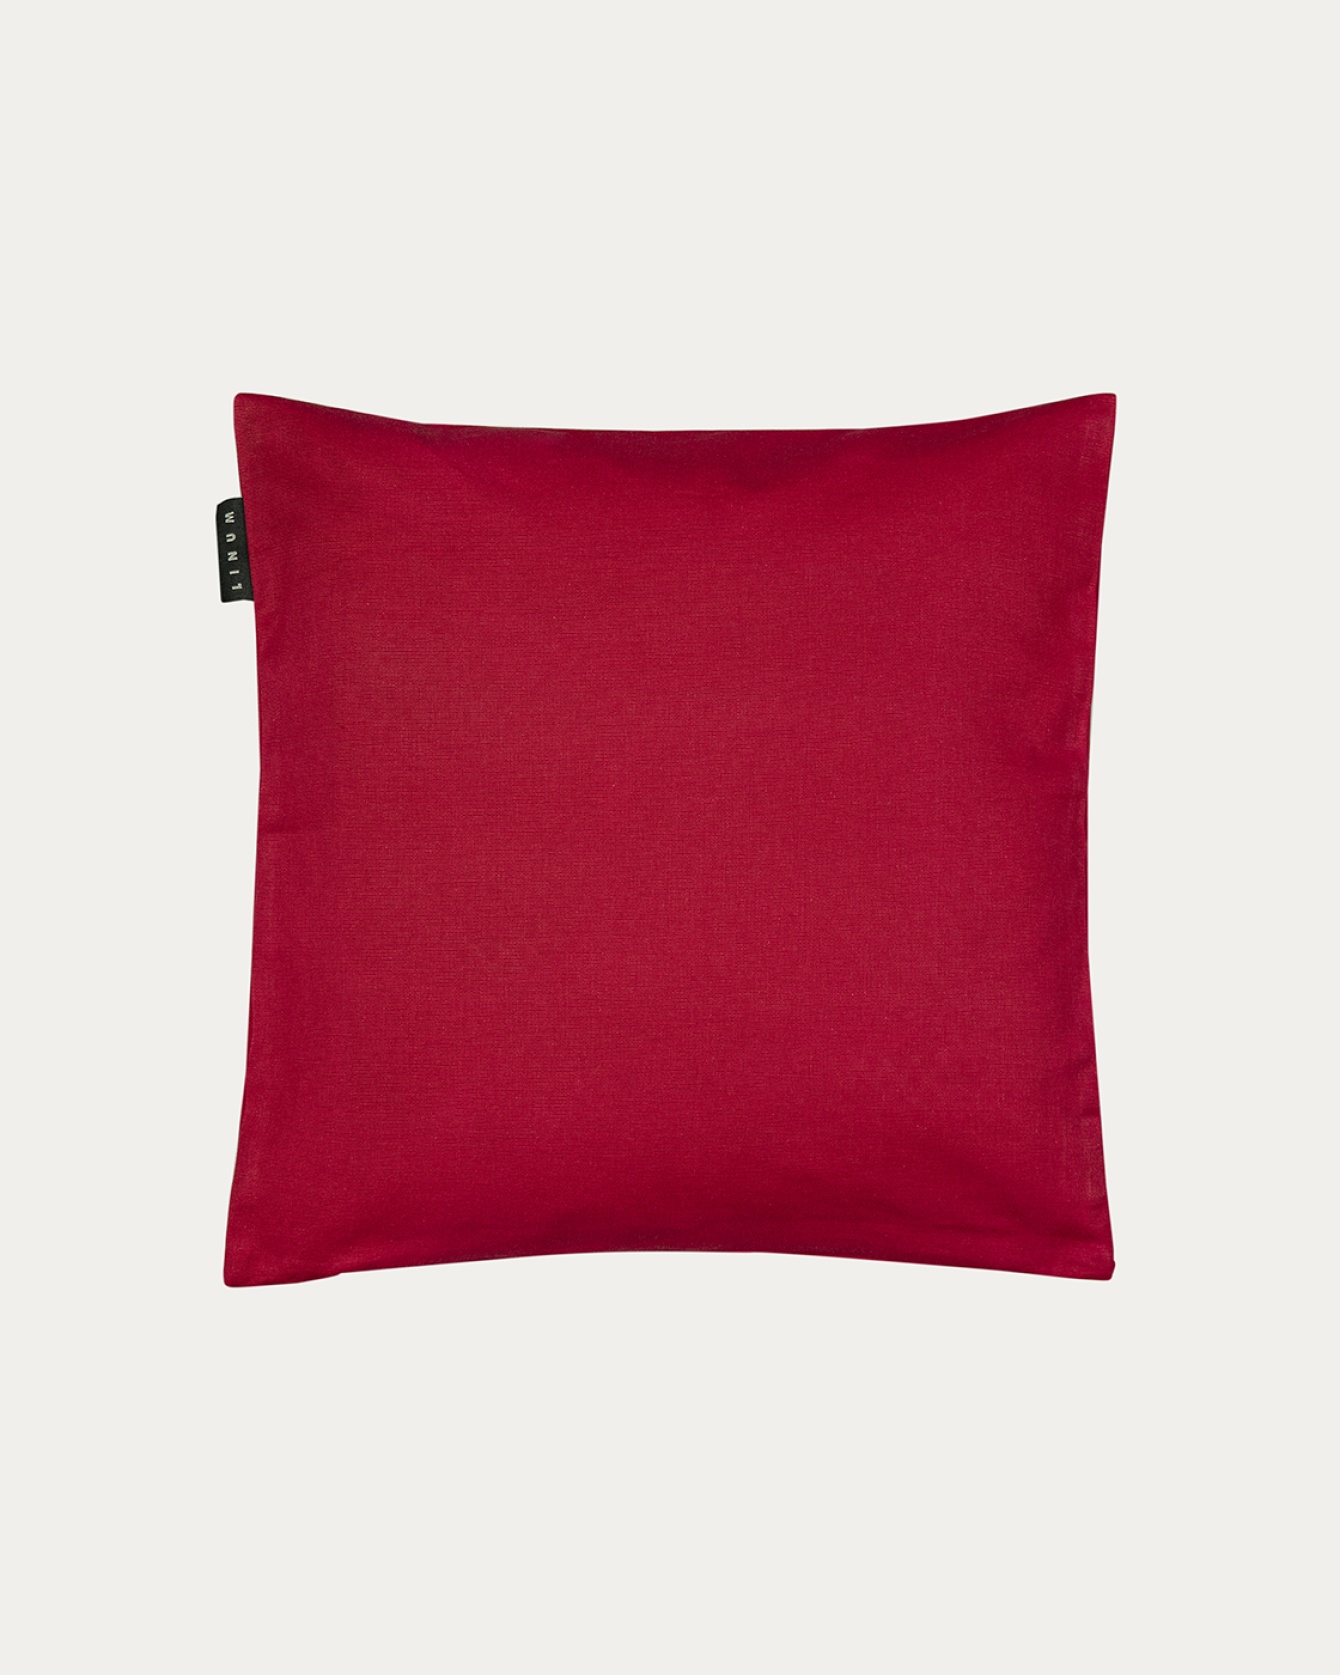 Produktbild rot ANNABELL Kissenhülle aus weicher Baumwolle von LINUM DESIGN. Größe 40x40 cm.